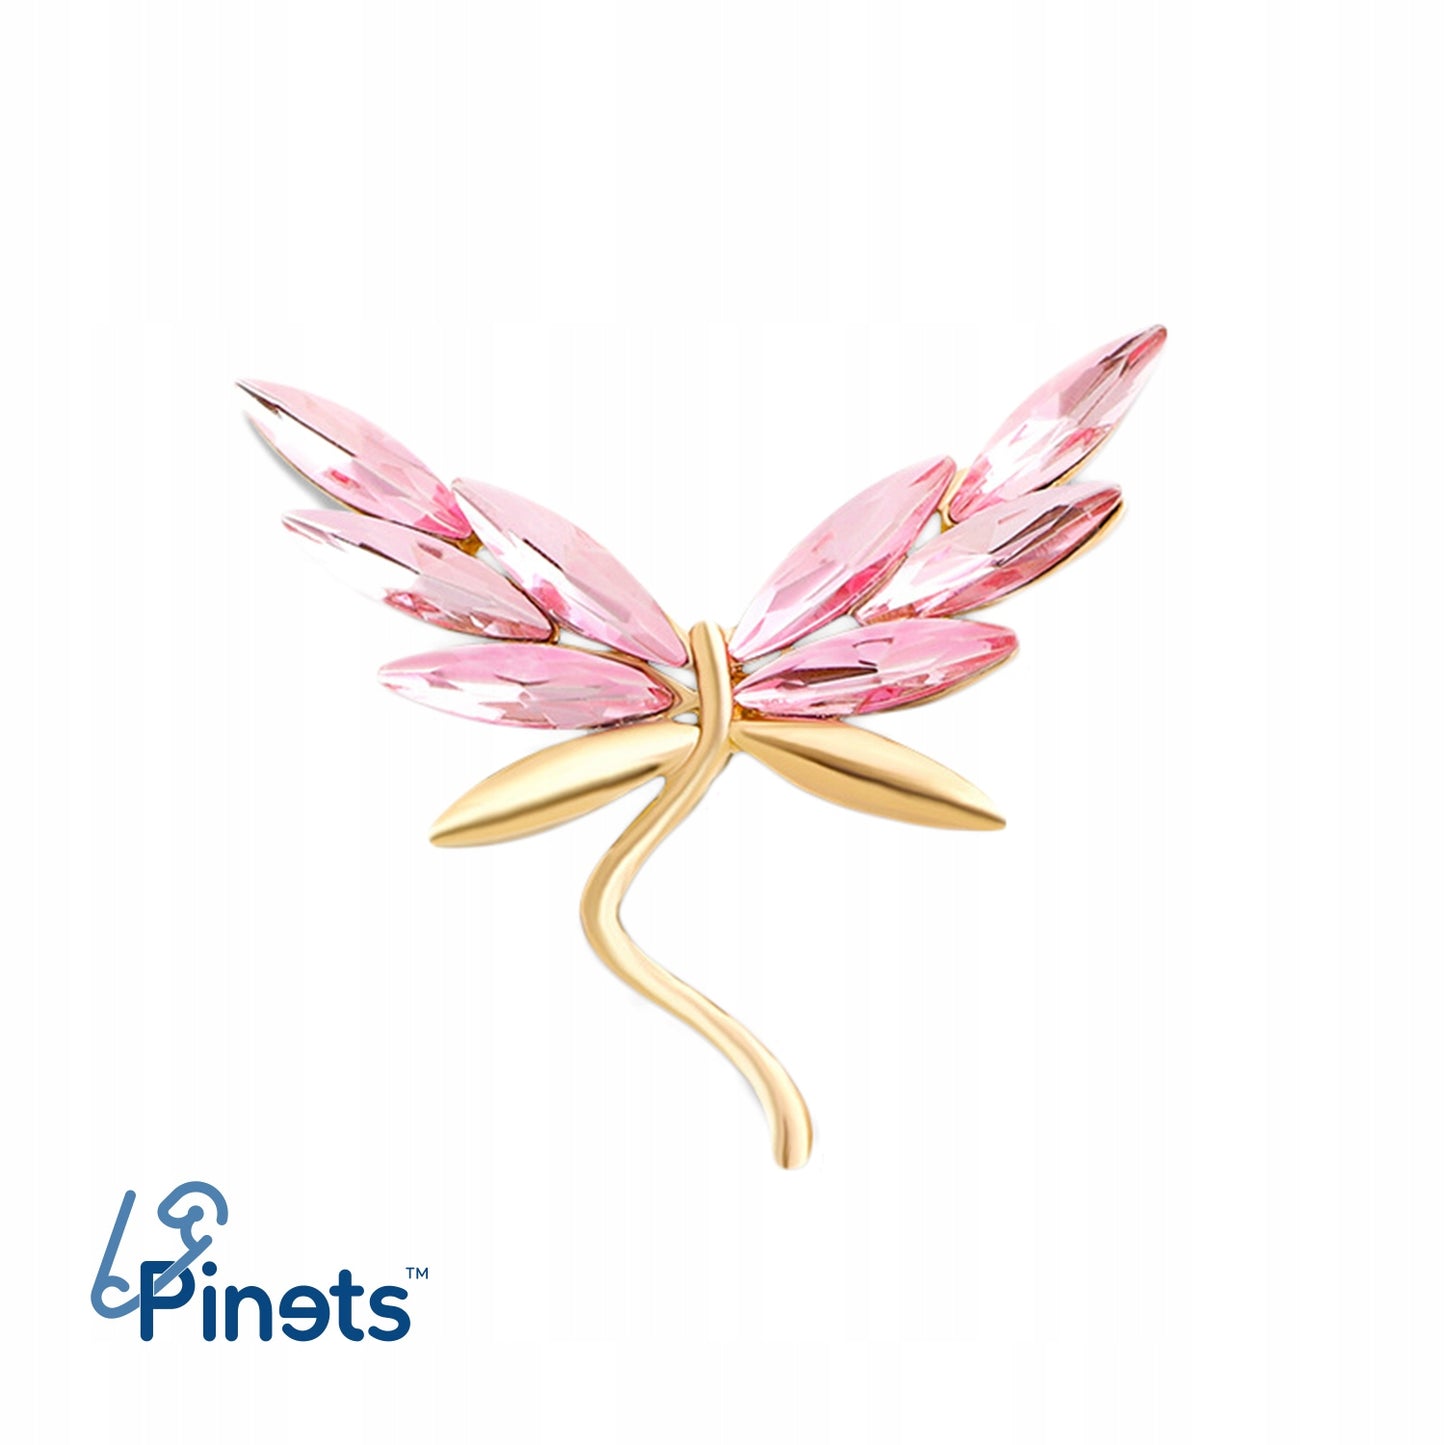 Ważka złota z różowymi skrzydłami - broszka